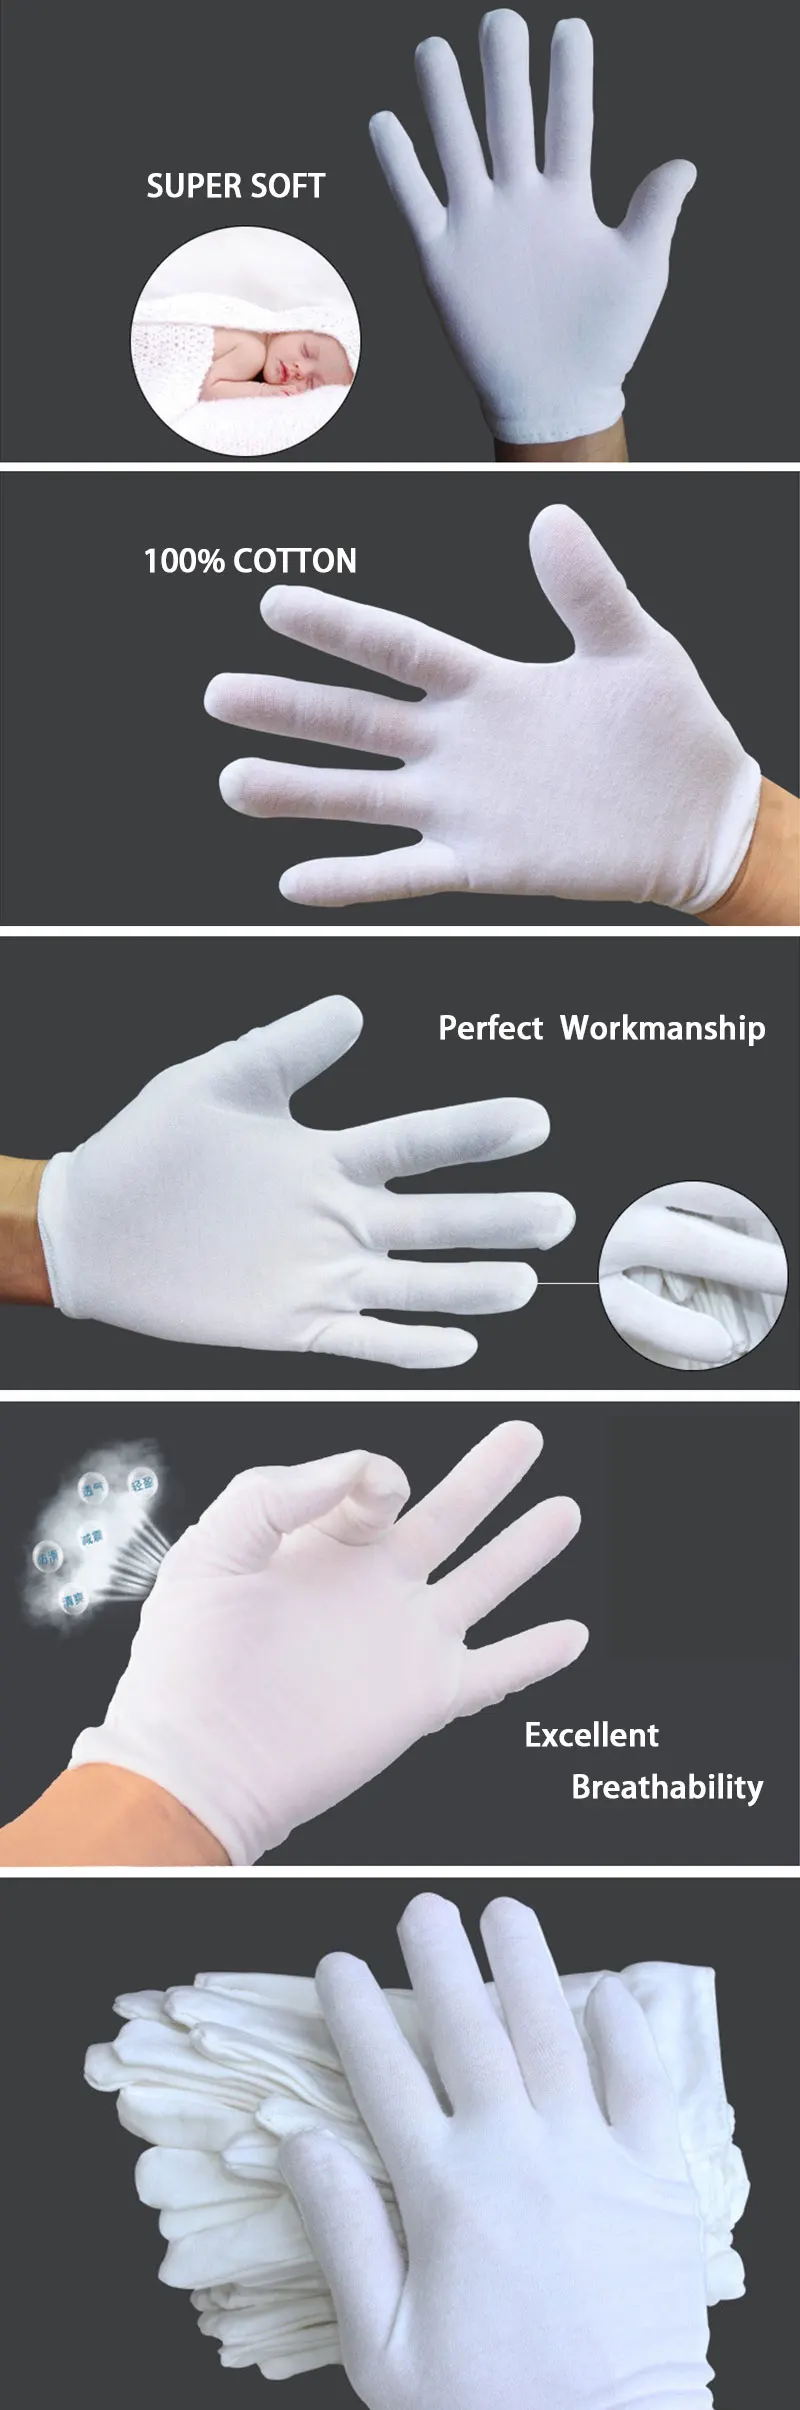 NMSafety высококачественные полезные белые хлопковые перчатки для работы по дому и безопасности водителя